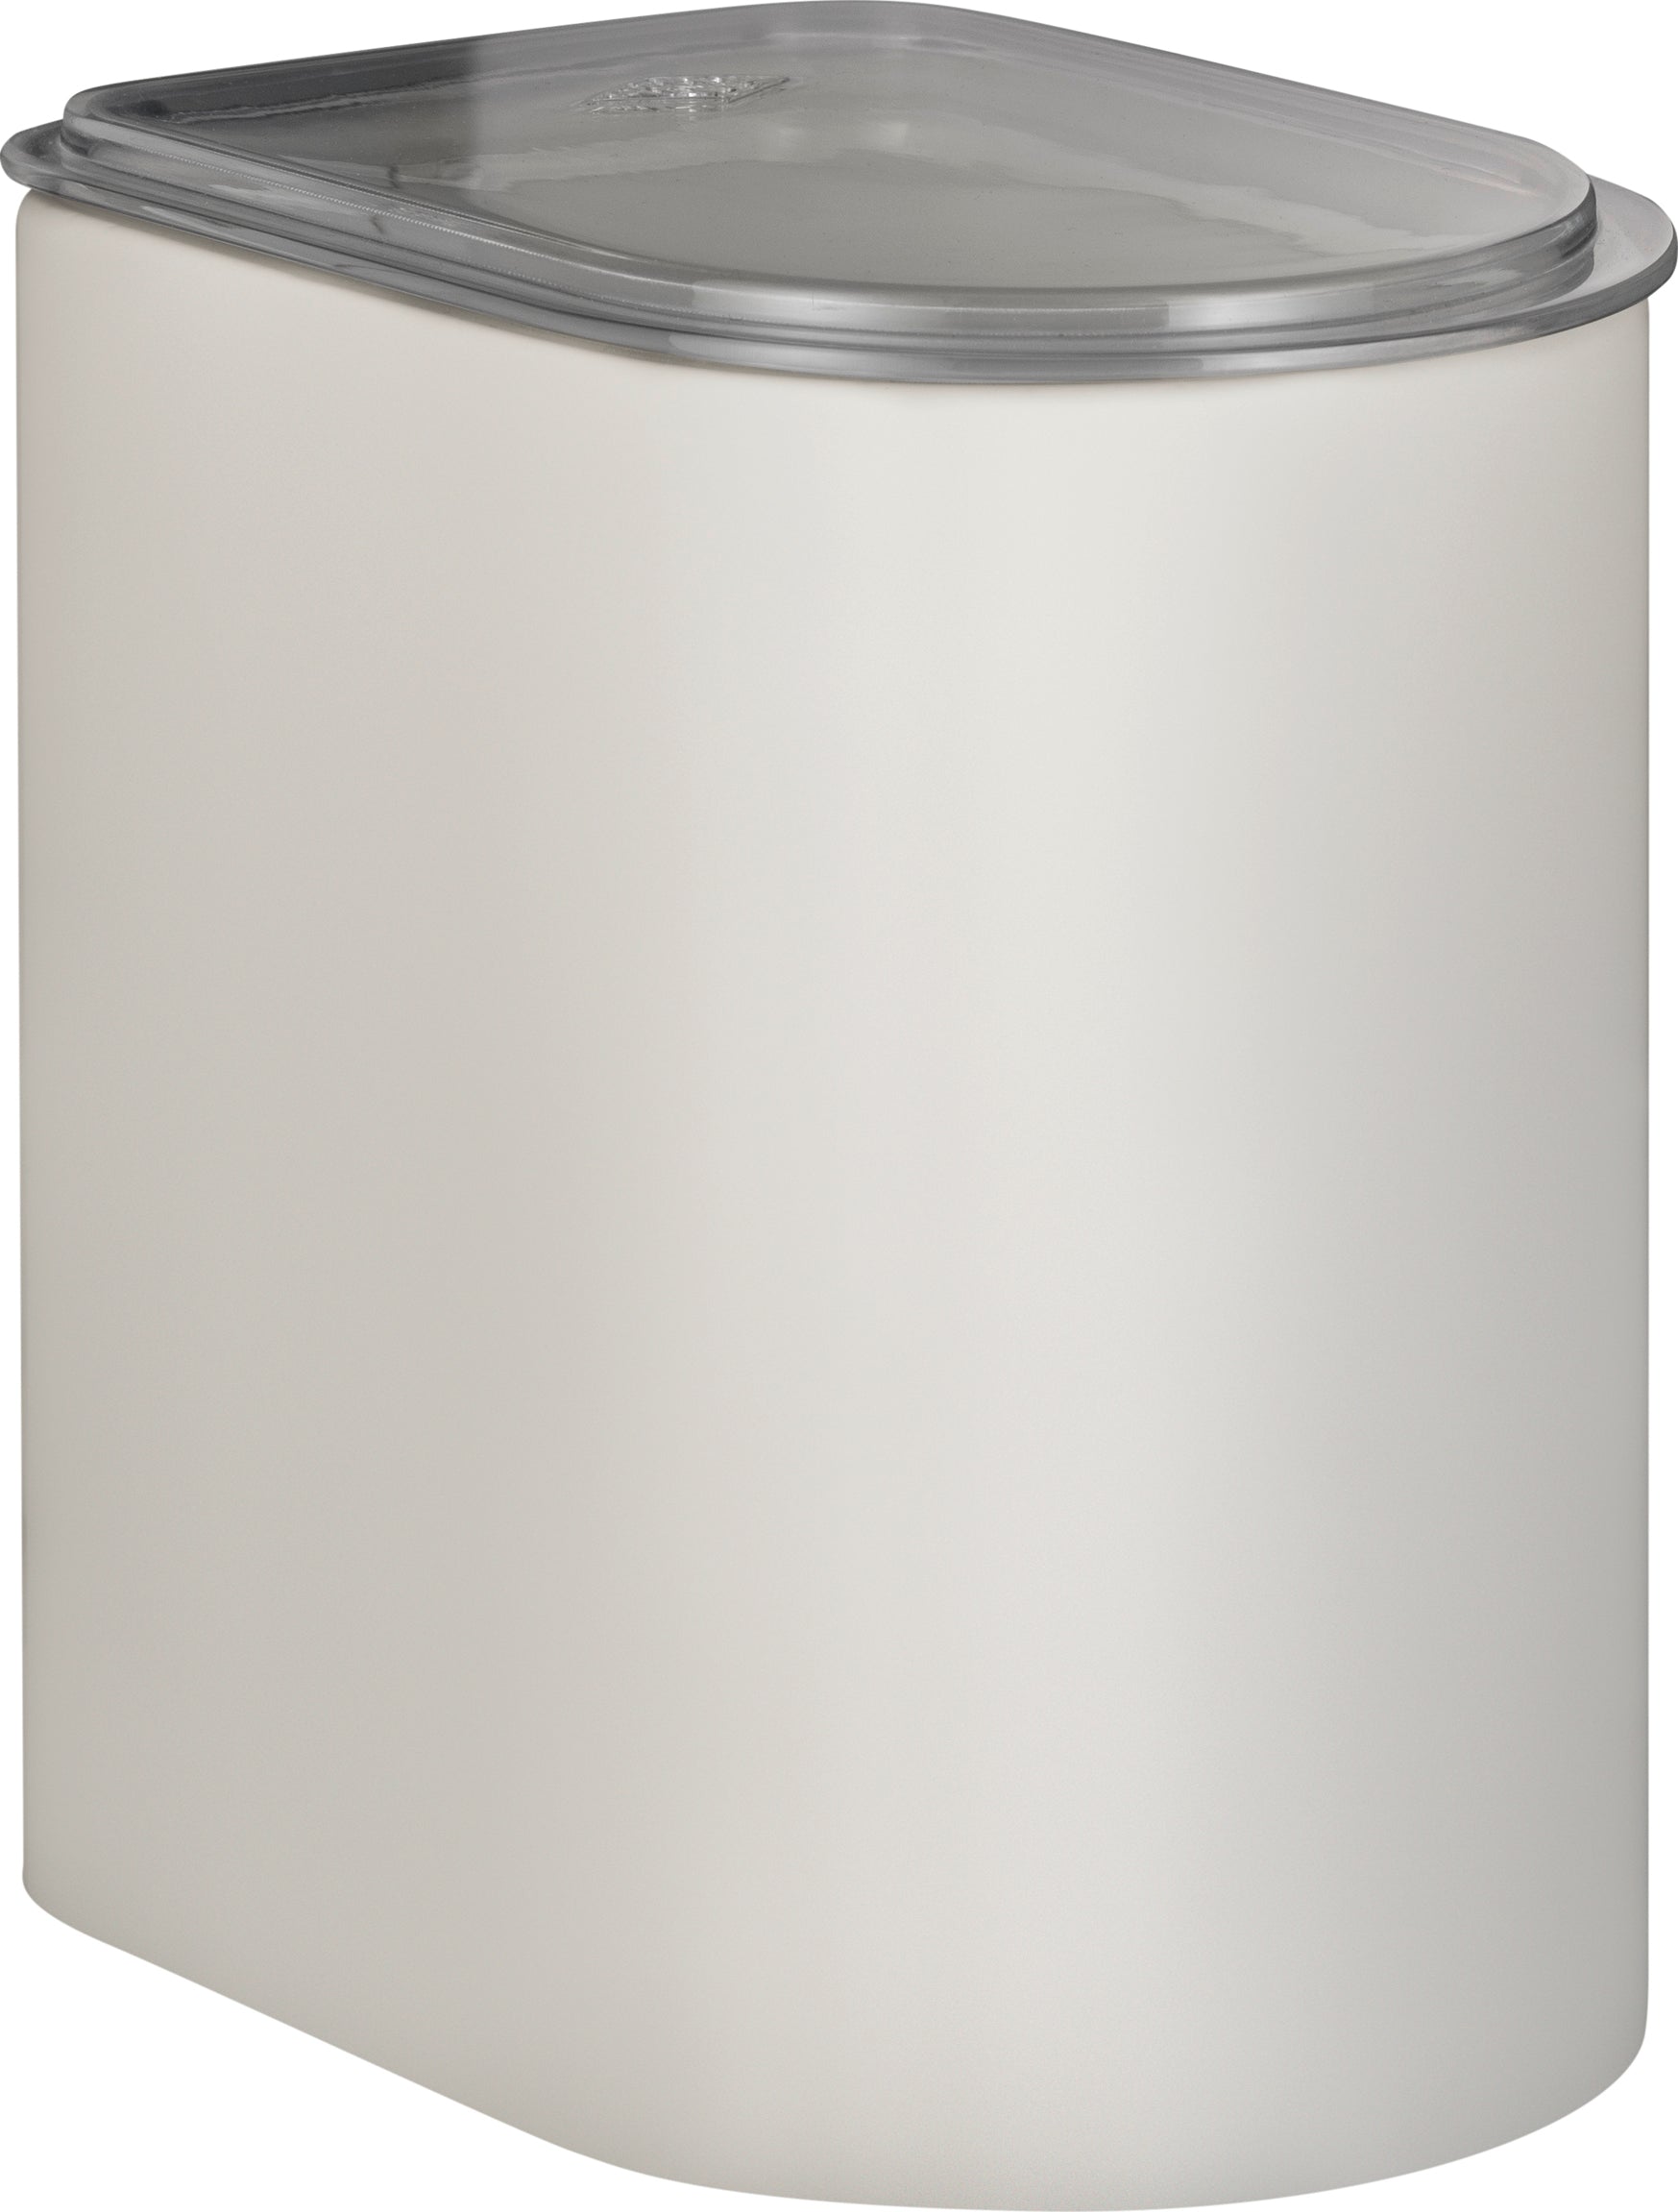 Wesco Canister 2,2 litres avec couvercle acrylique, sable Matt